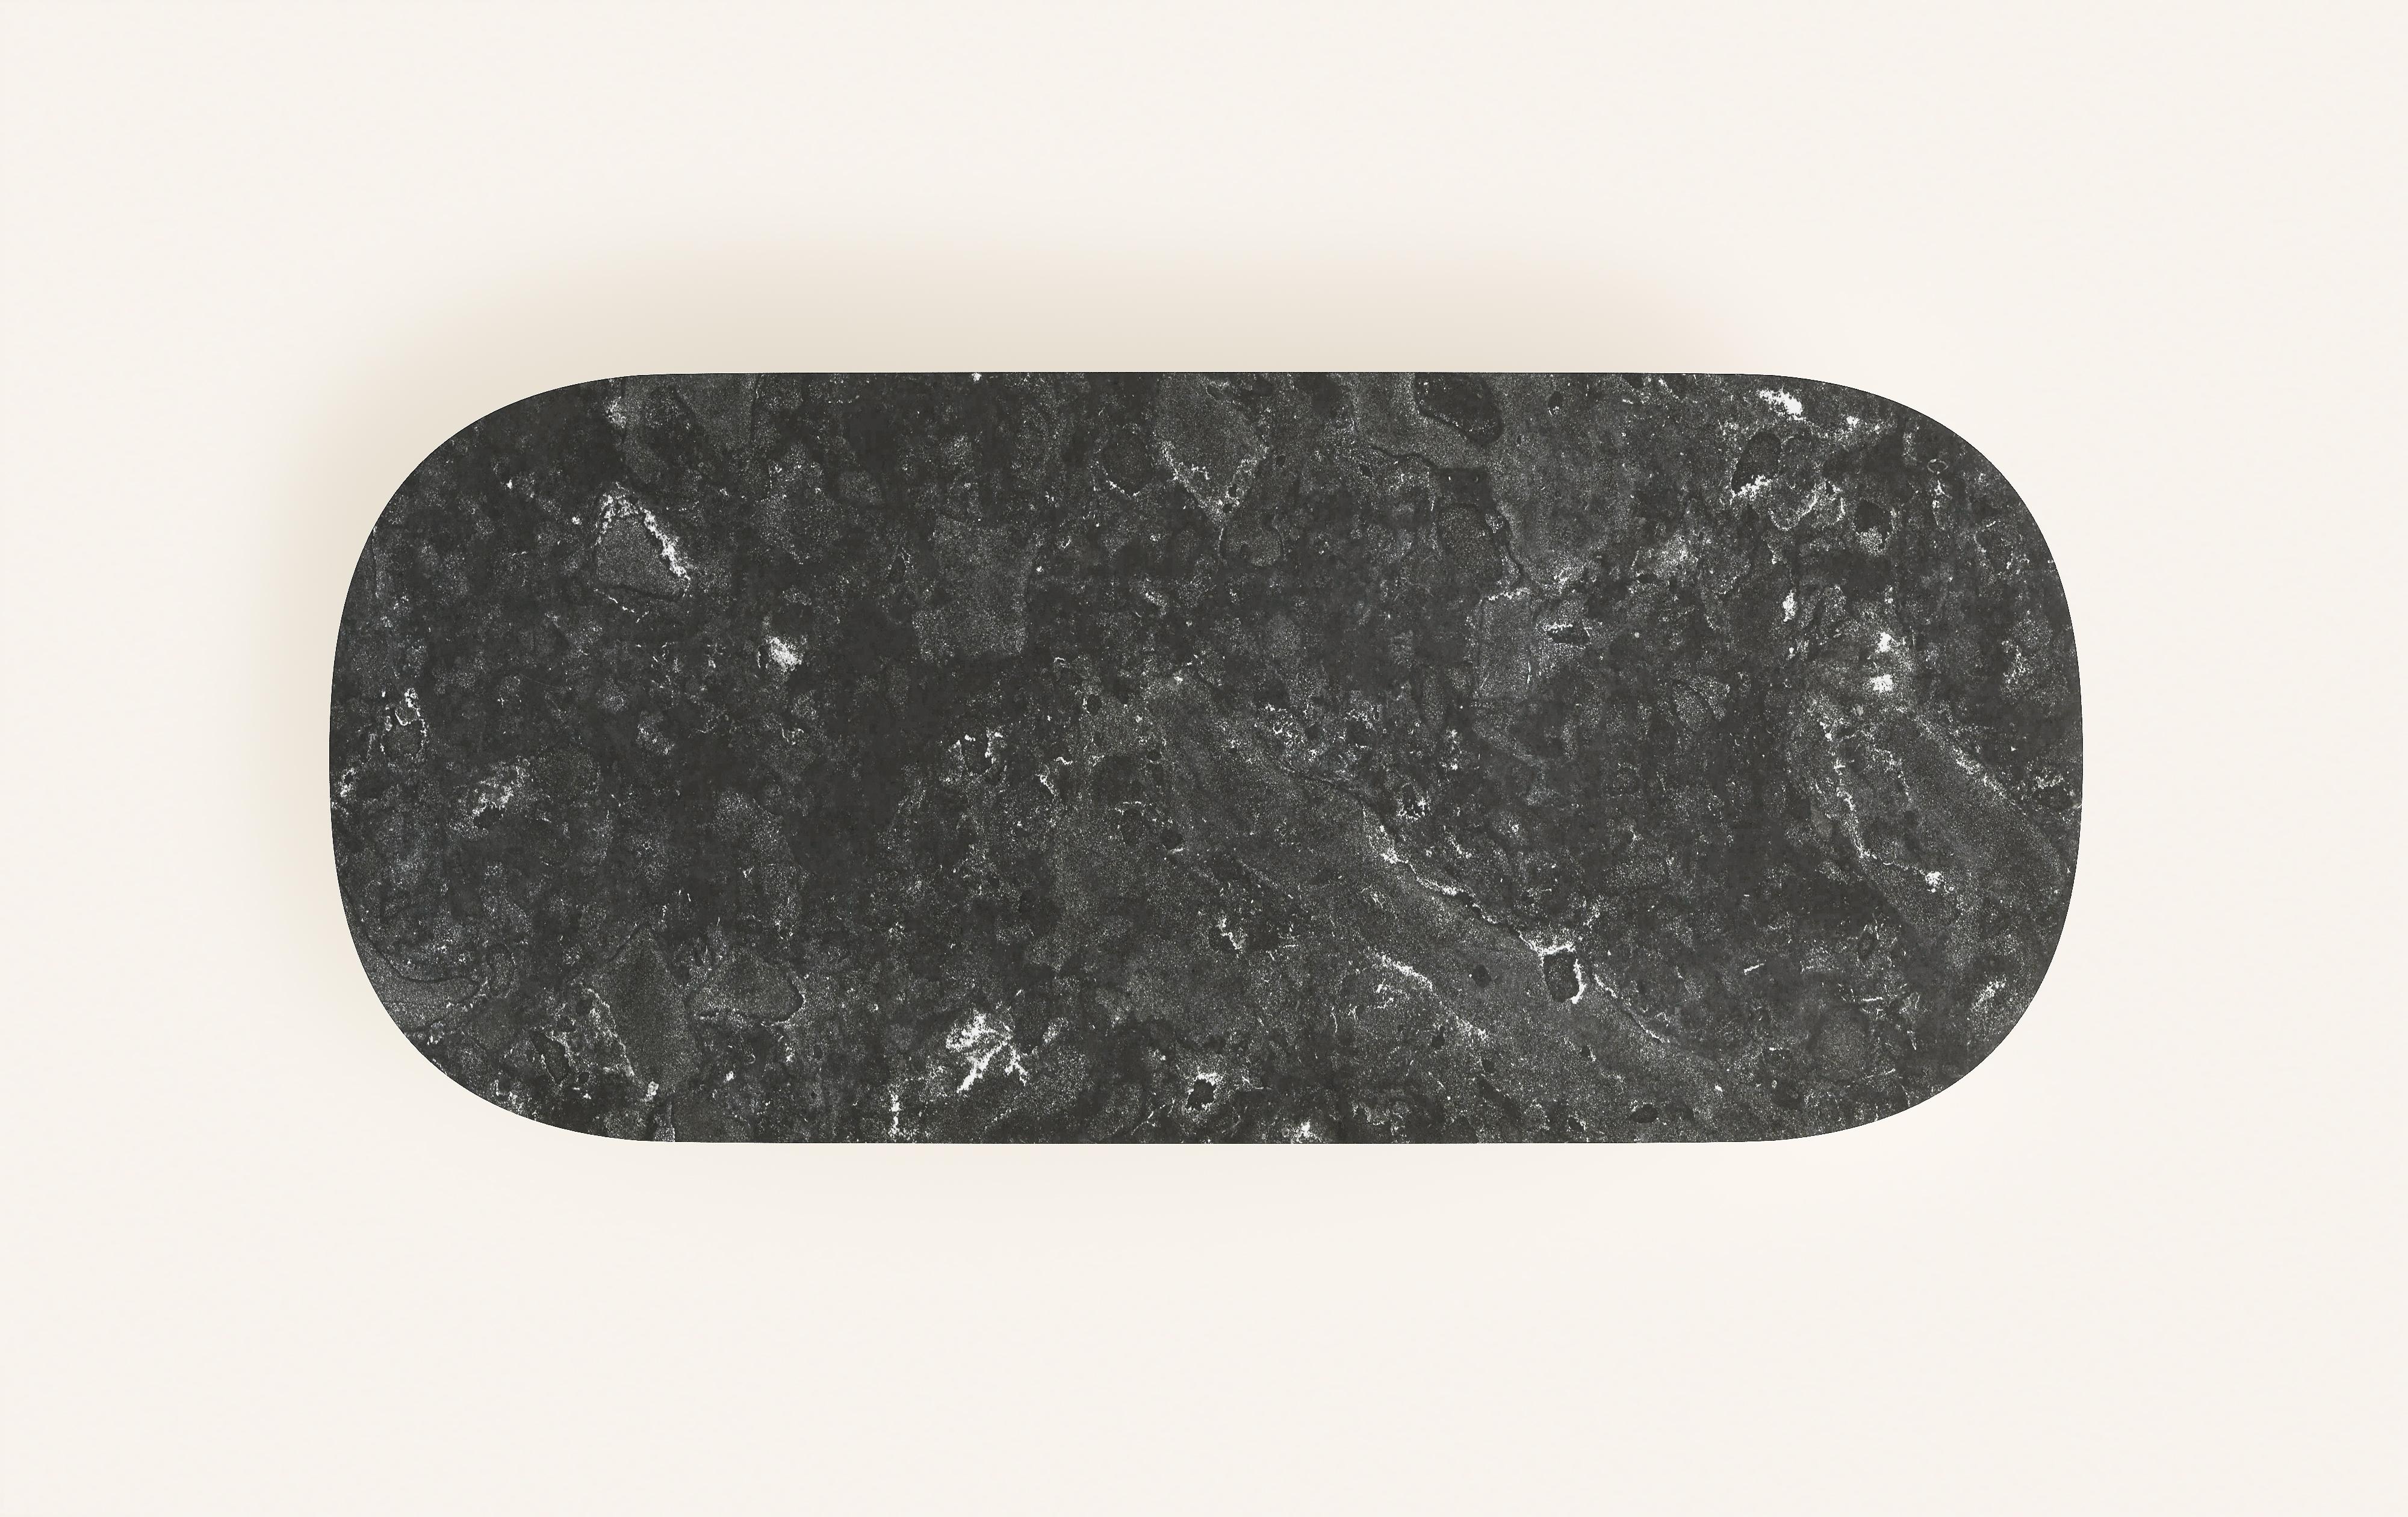 FORM(LA) Cono Oval Dining Table 84”L x 42”W x 30”H Nero Petite Granite In New Condition For Sale In Los Angeles, CA